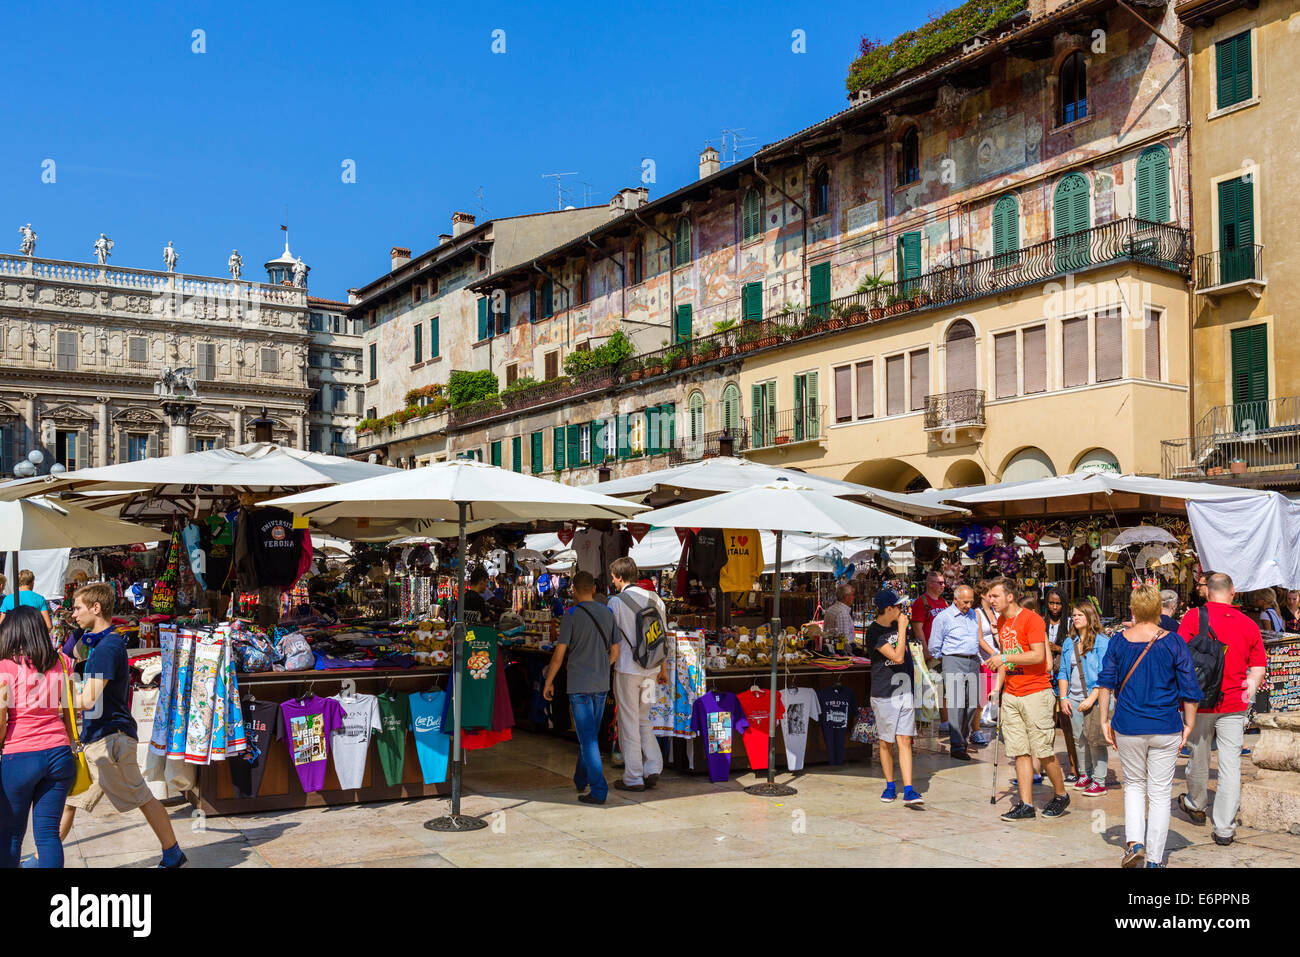 Market stalls on the Piazza delle Erbe, Verona, Veneto, Italy Stock Photo